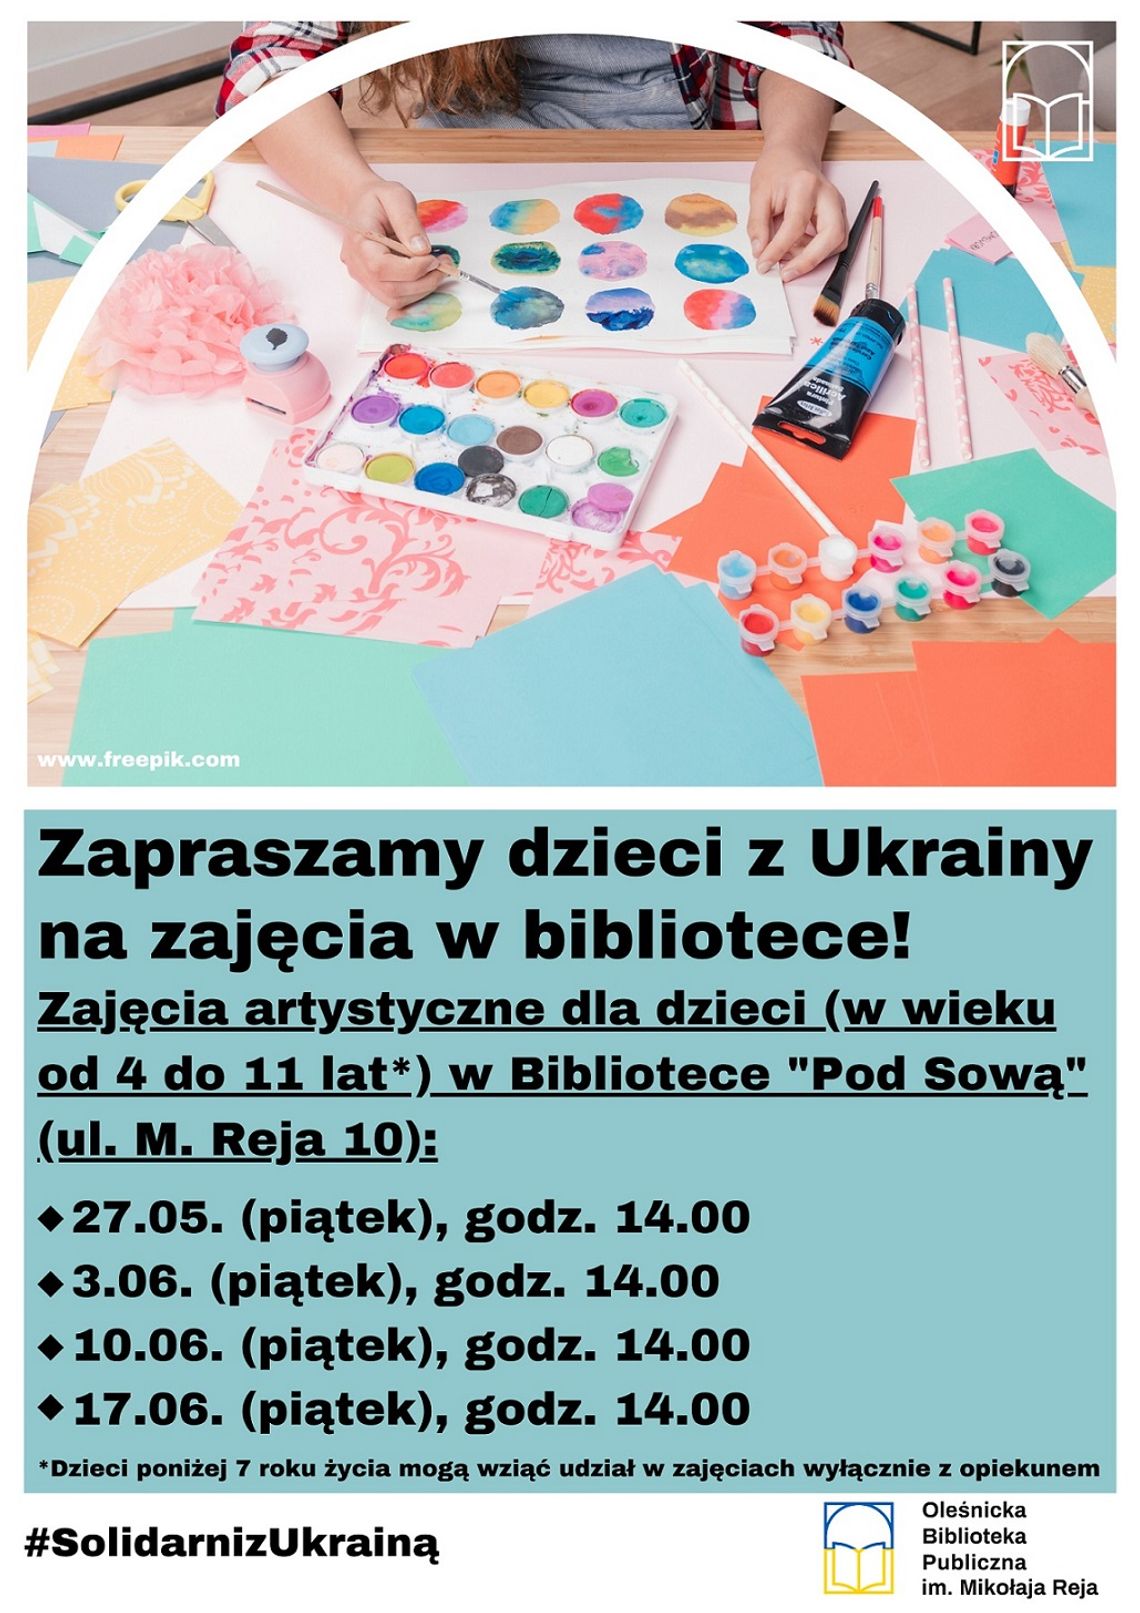 Заходи для українських дітей у бібліотеці! Zajęcia dla dzieci z Ukrainy w bibliotece